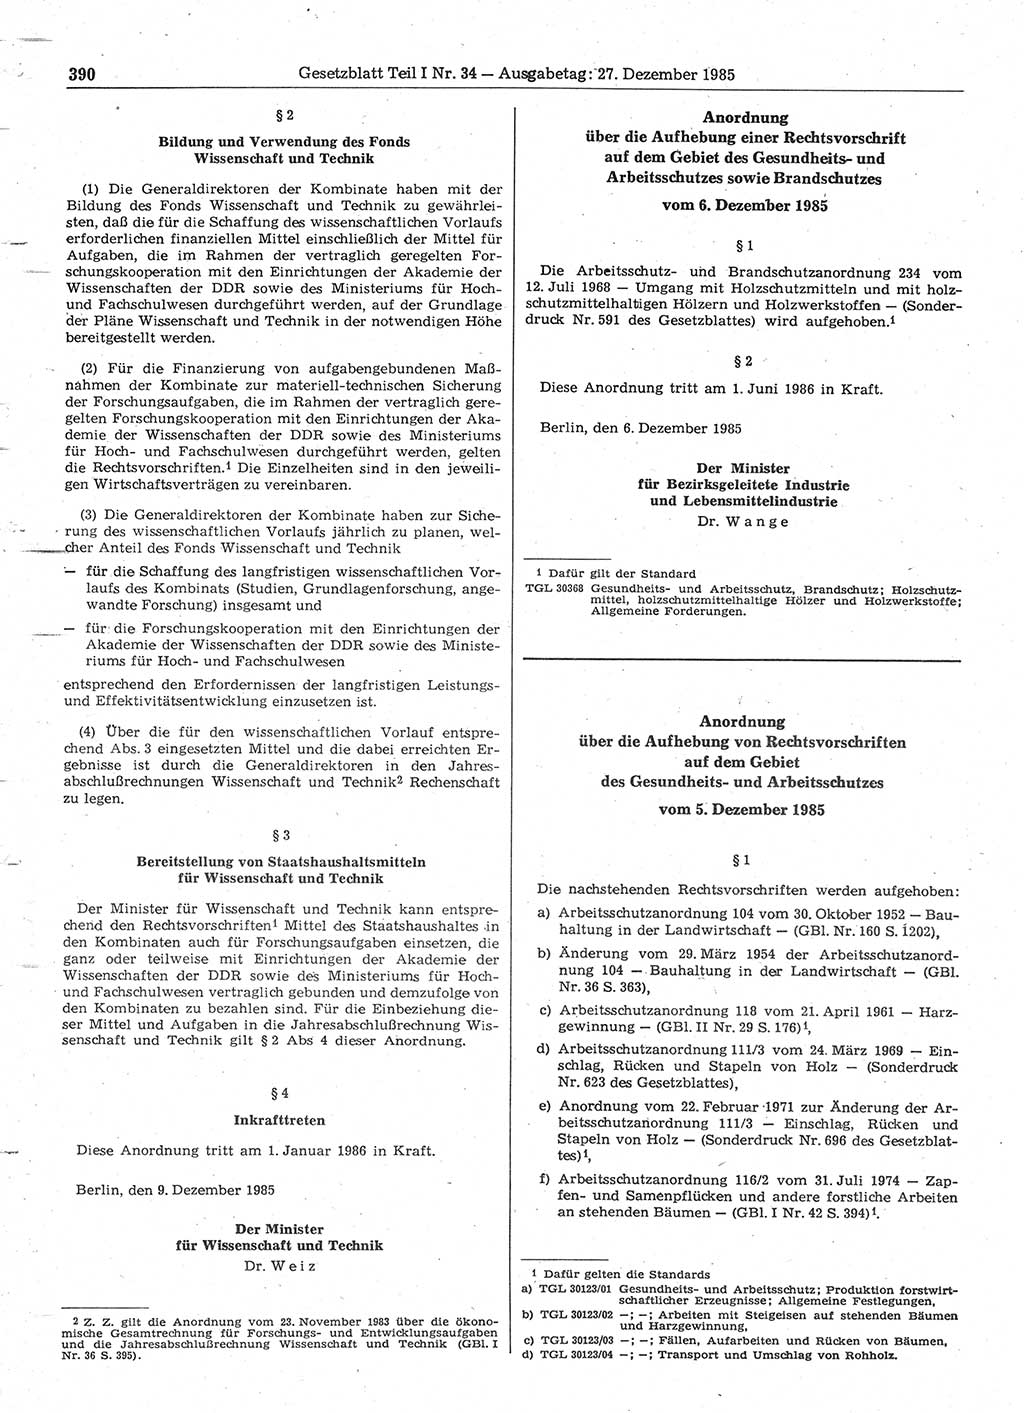 Gesetzblatt (GBl.) der Deutschen Demokratischen Republik (DDR) Teil Ⅰ 1985, Seite 390 (GBl. DDR Ⅰ 1985, S. 390)